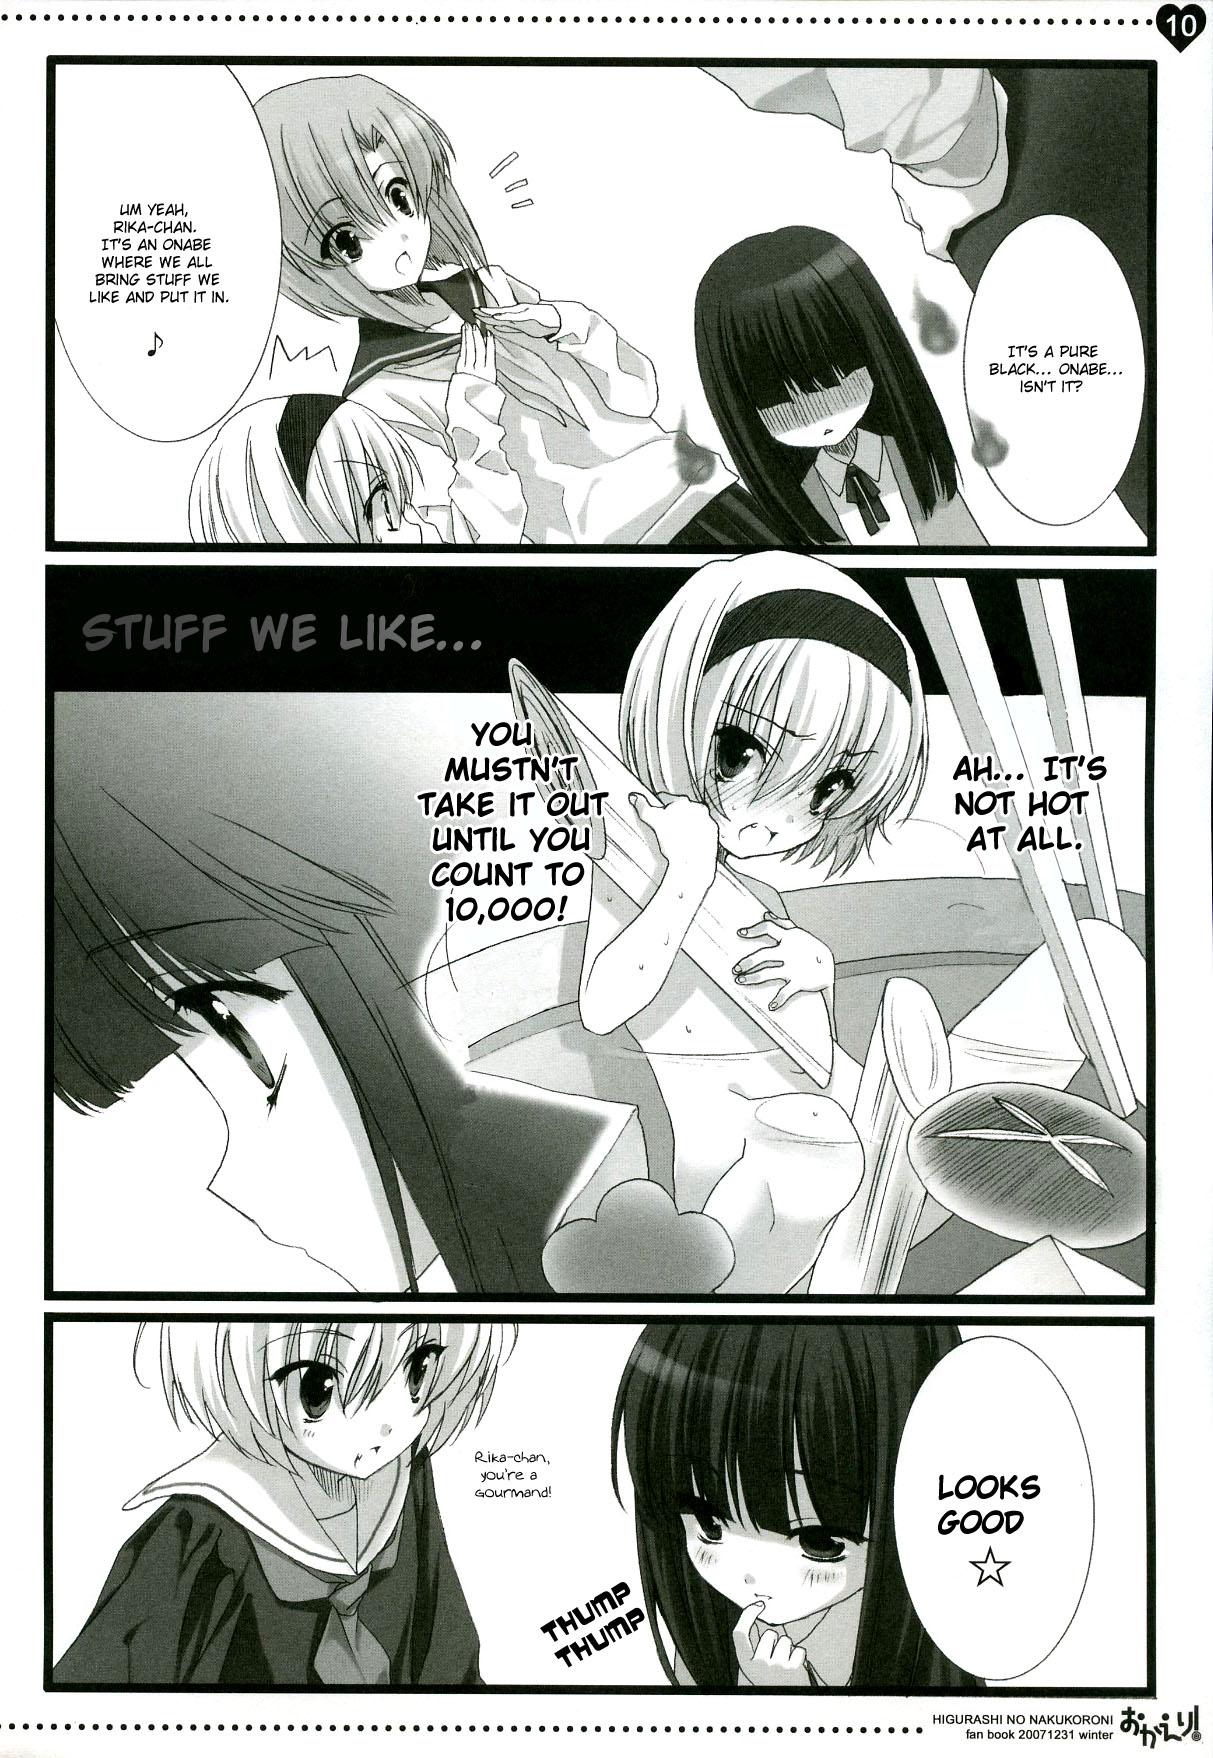 French Okaeri! - Higurashi no naku koro ni Backshots - Page 8